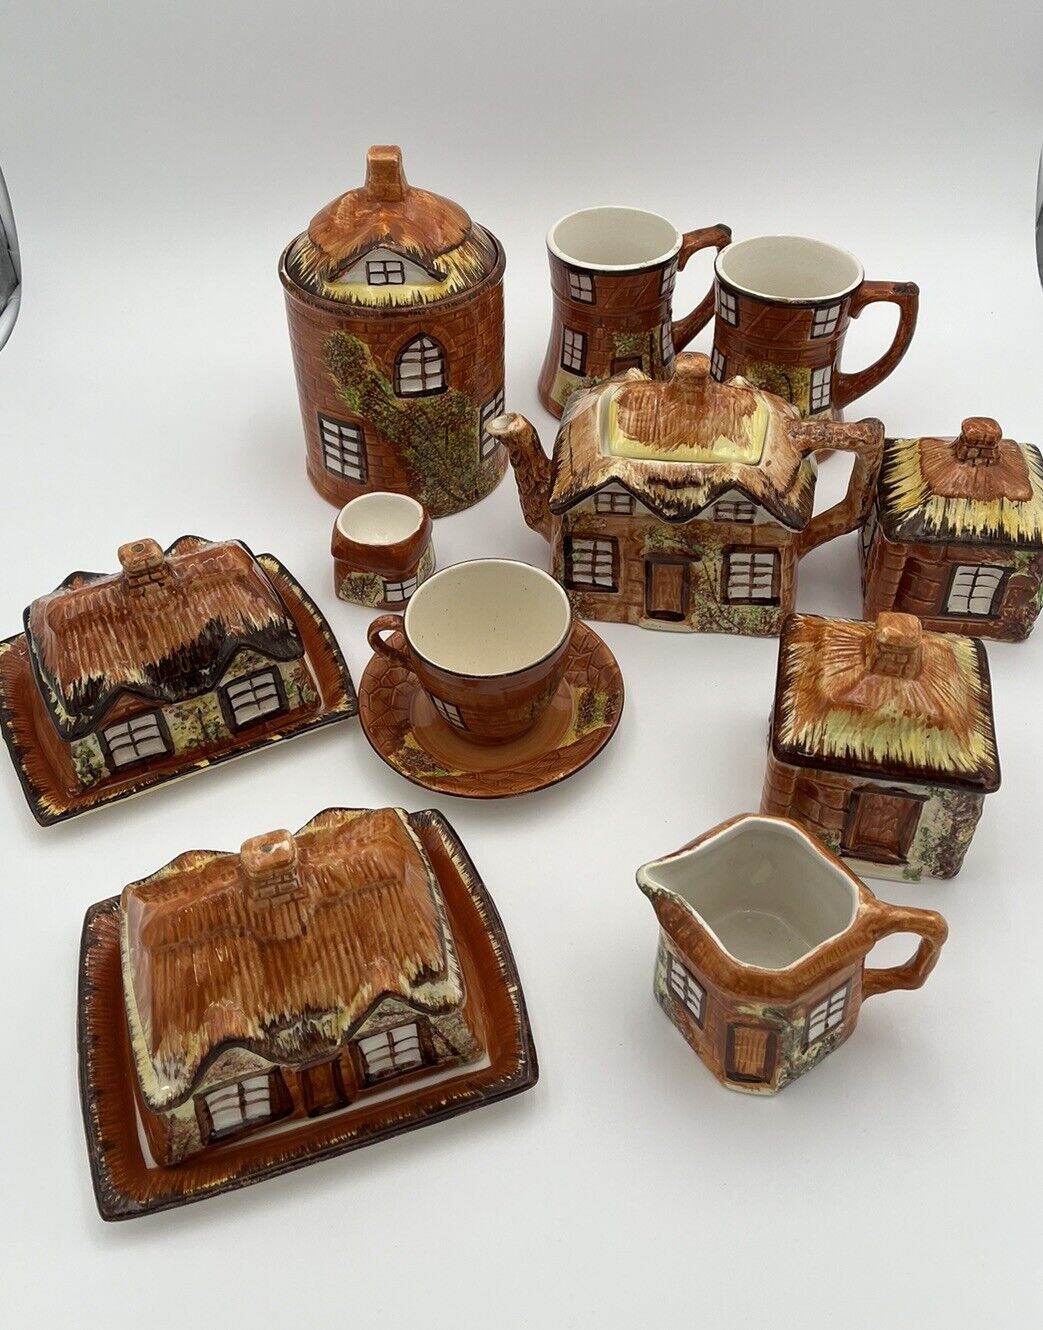 Price Kensington Cottage Ware Vintage Tea Set Collectible cottagecore grannycore